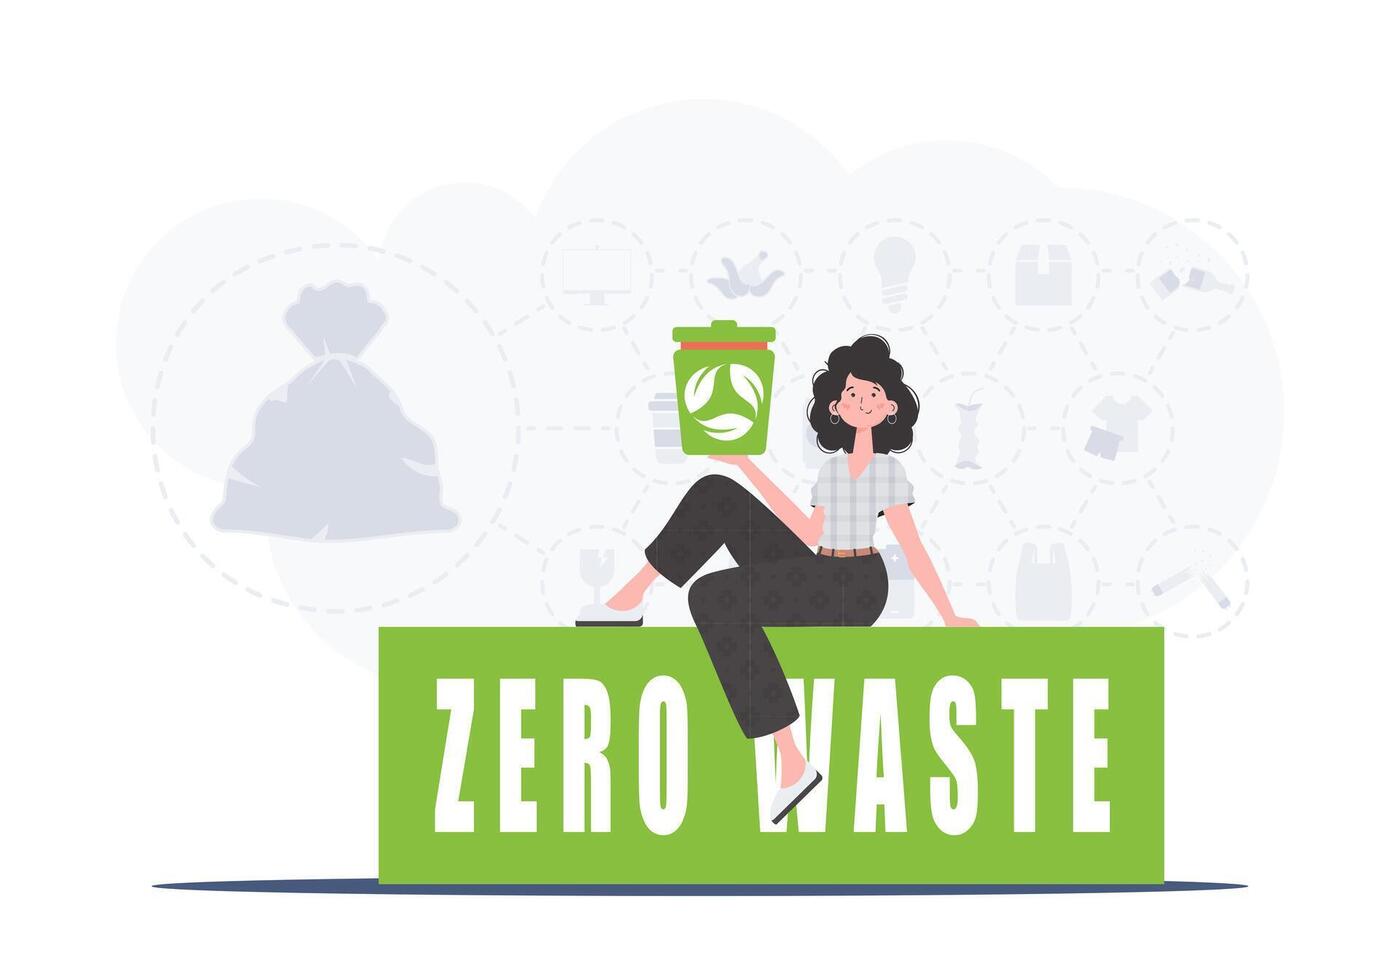 un mujer se sienta y sostiene un basura lata en su mano. el concepto de ecología y reciclaje. vector ilustración plano de moda estilo.